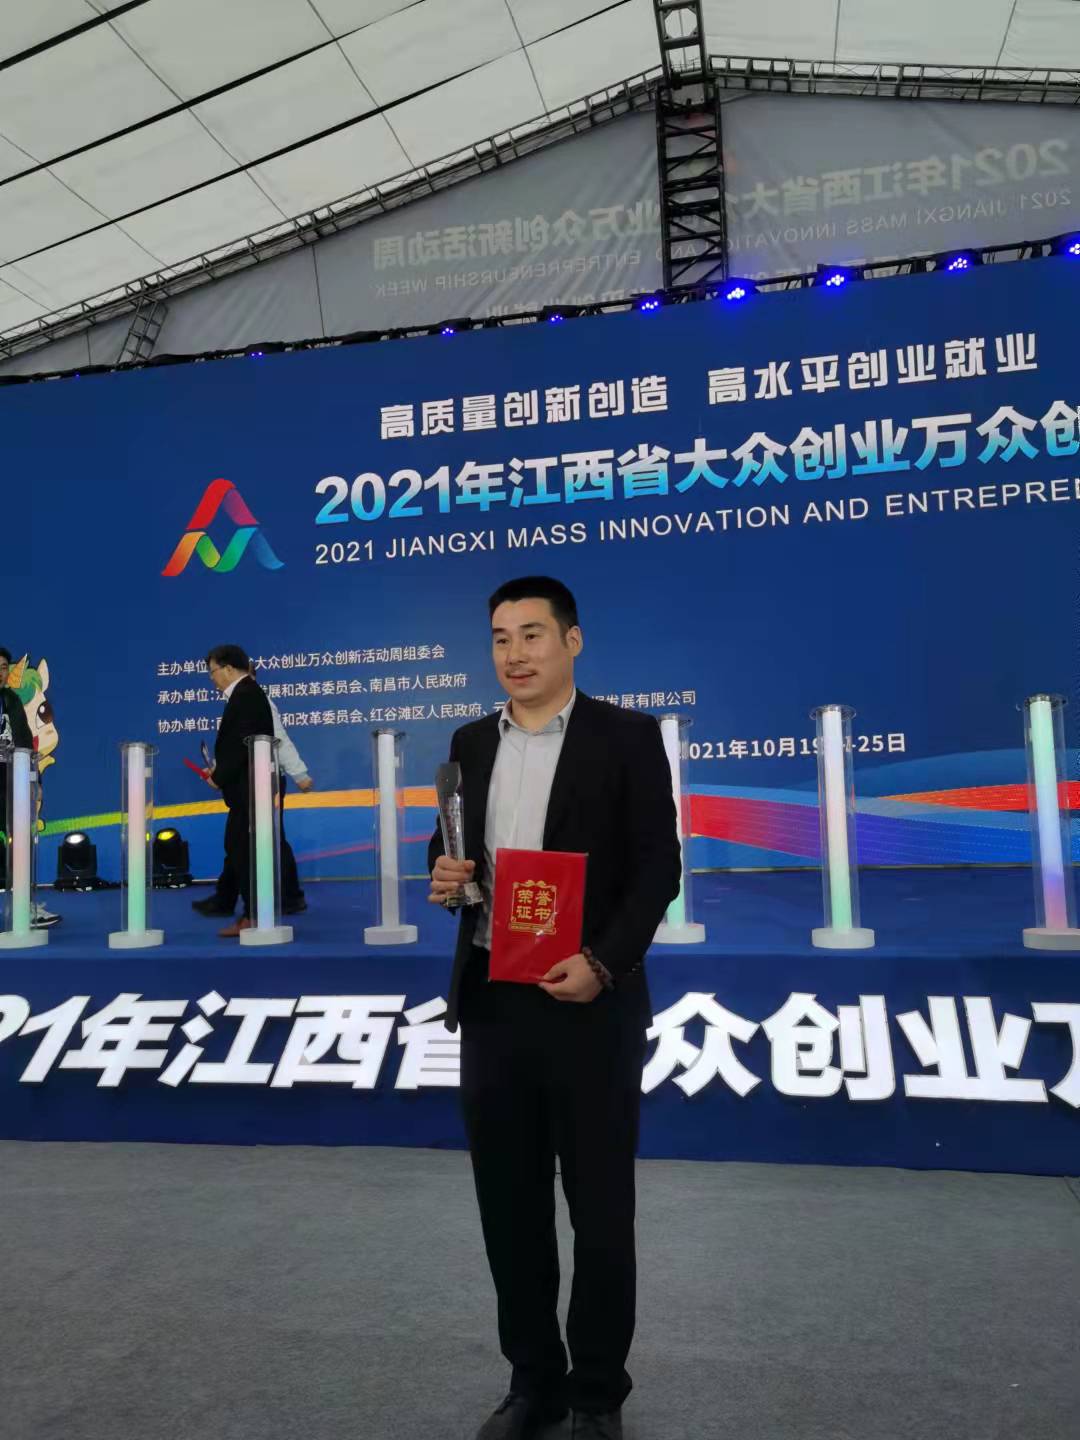 熱烈祝賀江西瀚德科技有限公司董事長周云平先生榮獲“江西省青年創業風云人物”殊榮！